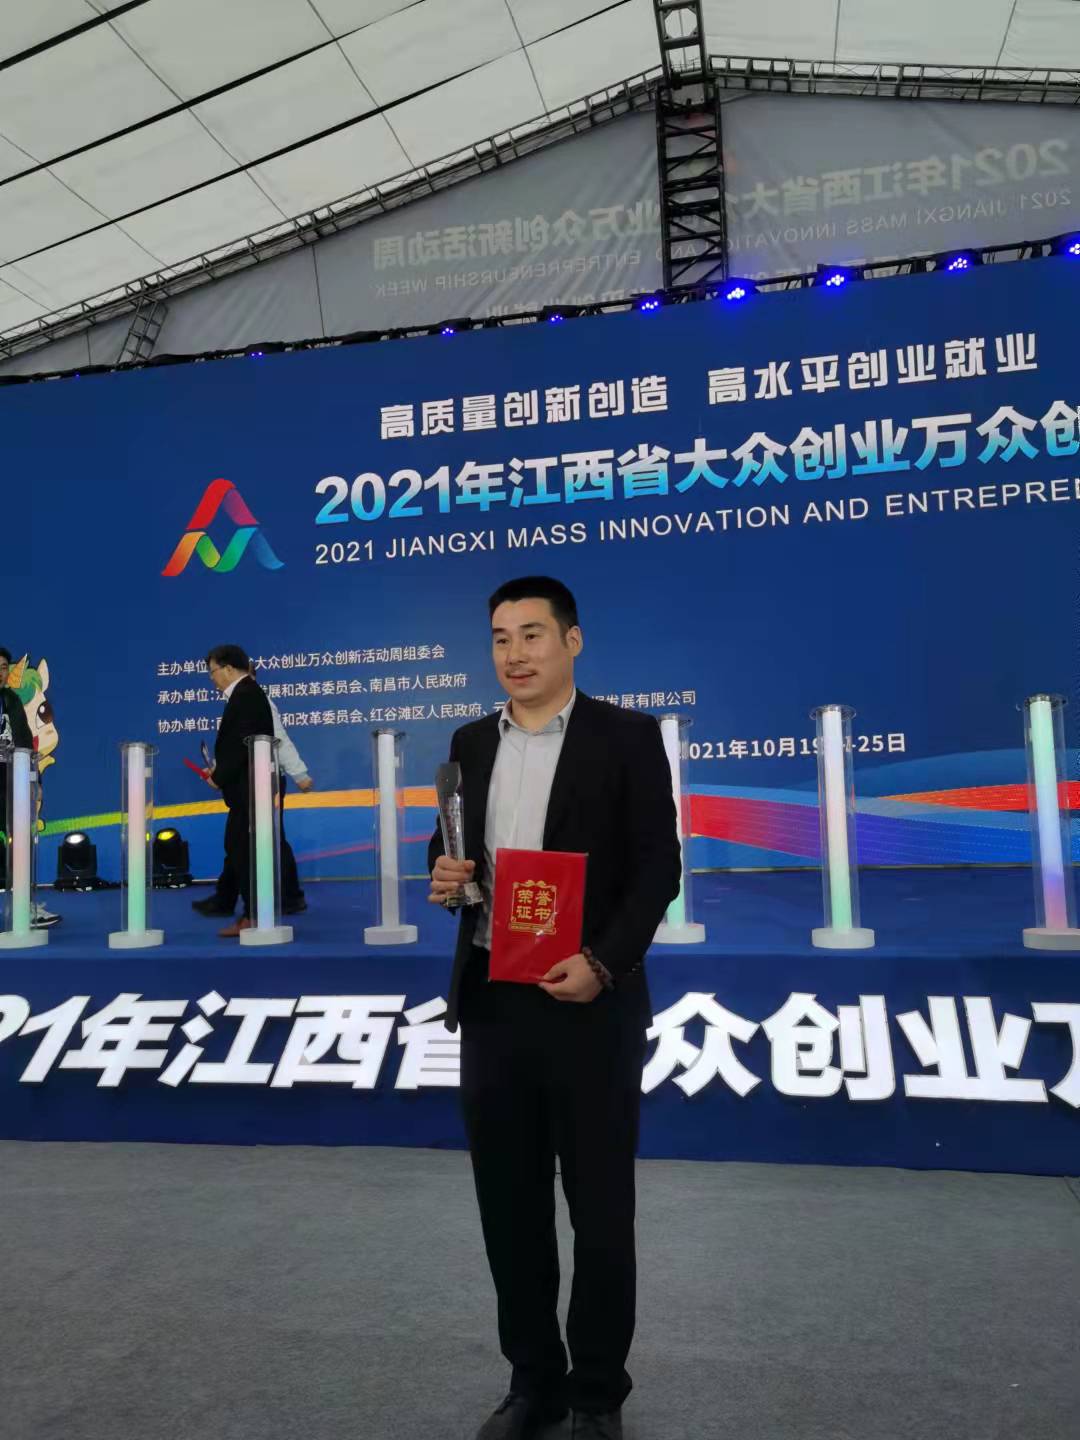 熱烈祝賀江西瀚德科技有限公司董事長周云平先生榮獲“江西省青年創業風云人物”殊榮！